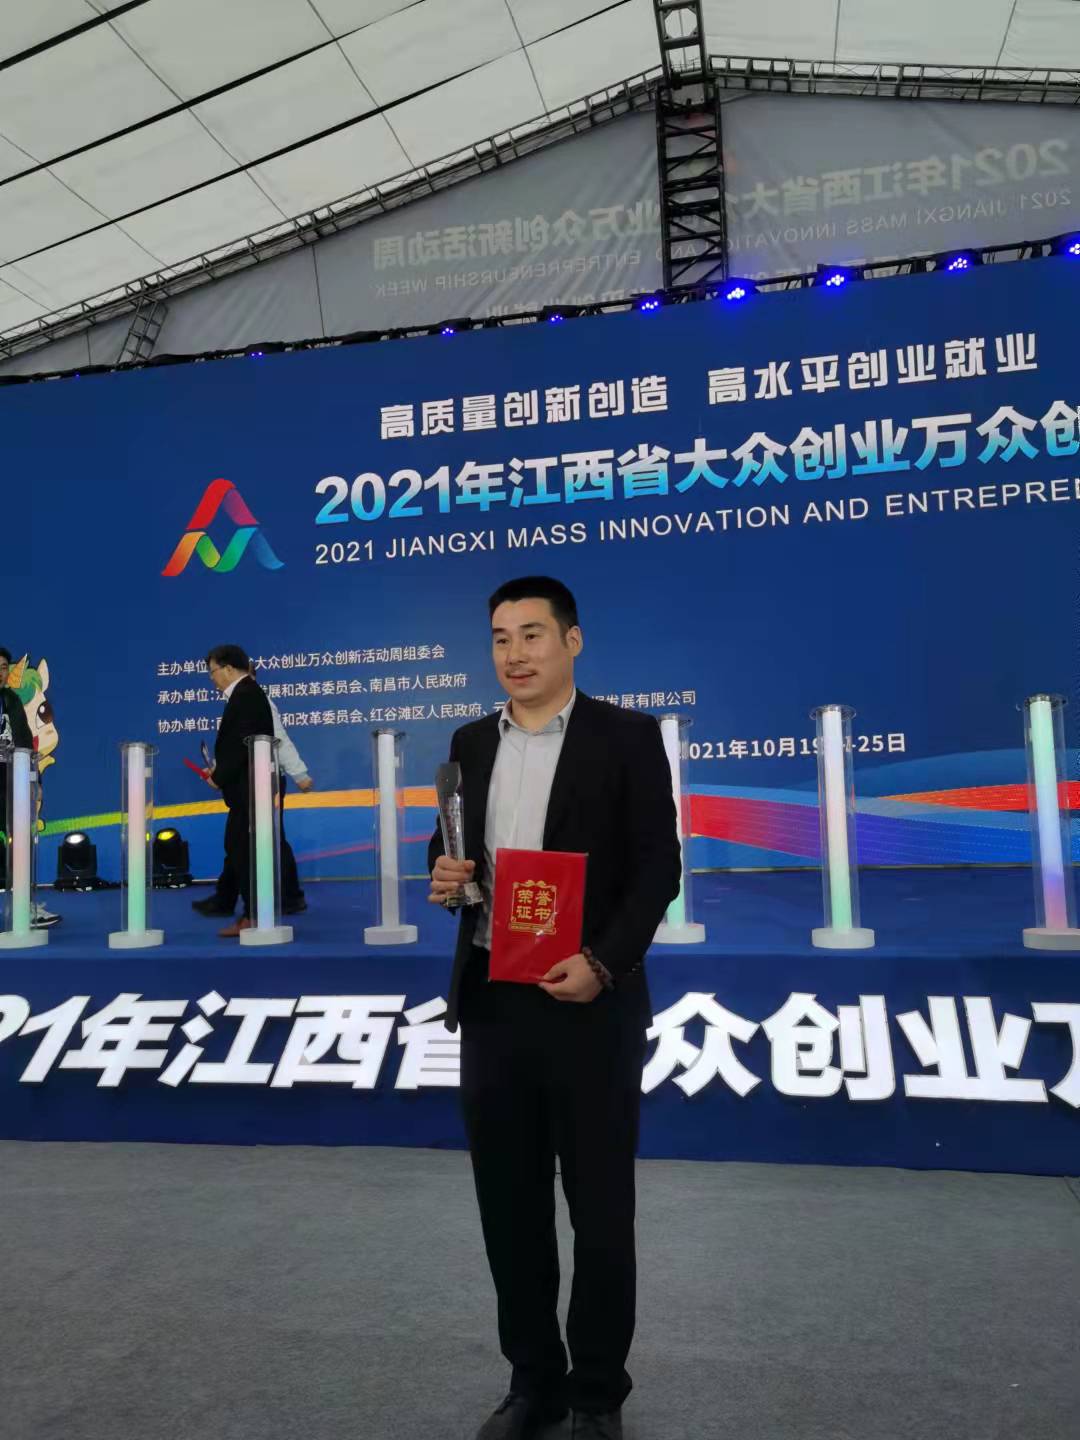 熱烈祝賀江西瀚德科技有限公司董事長周云平先生榮獲“江西省青年創業風云人物”殊榮！